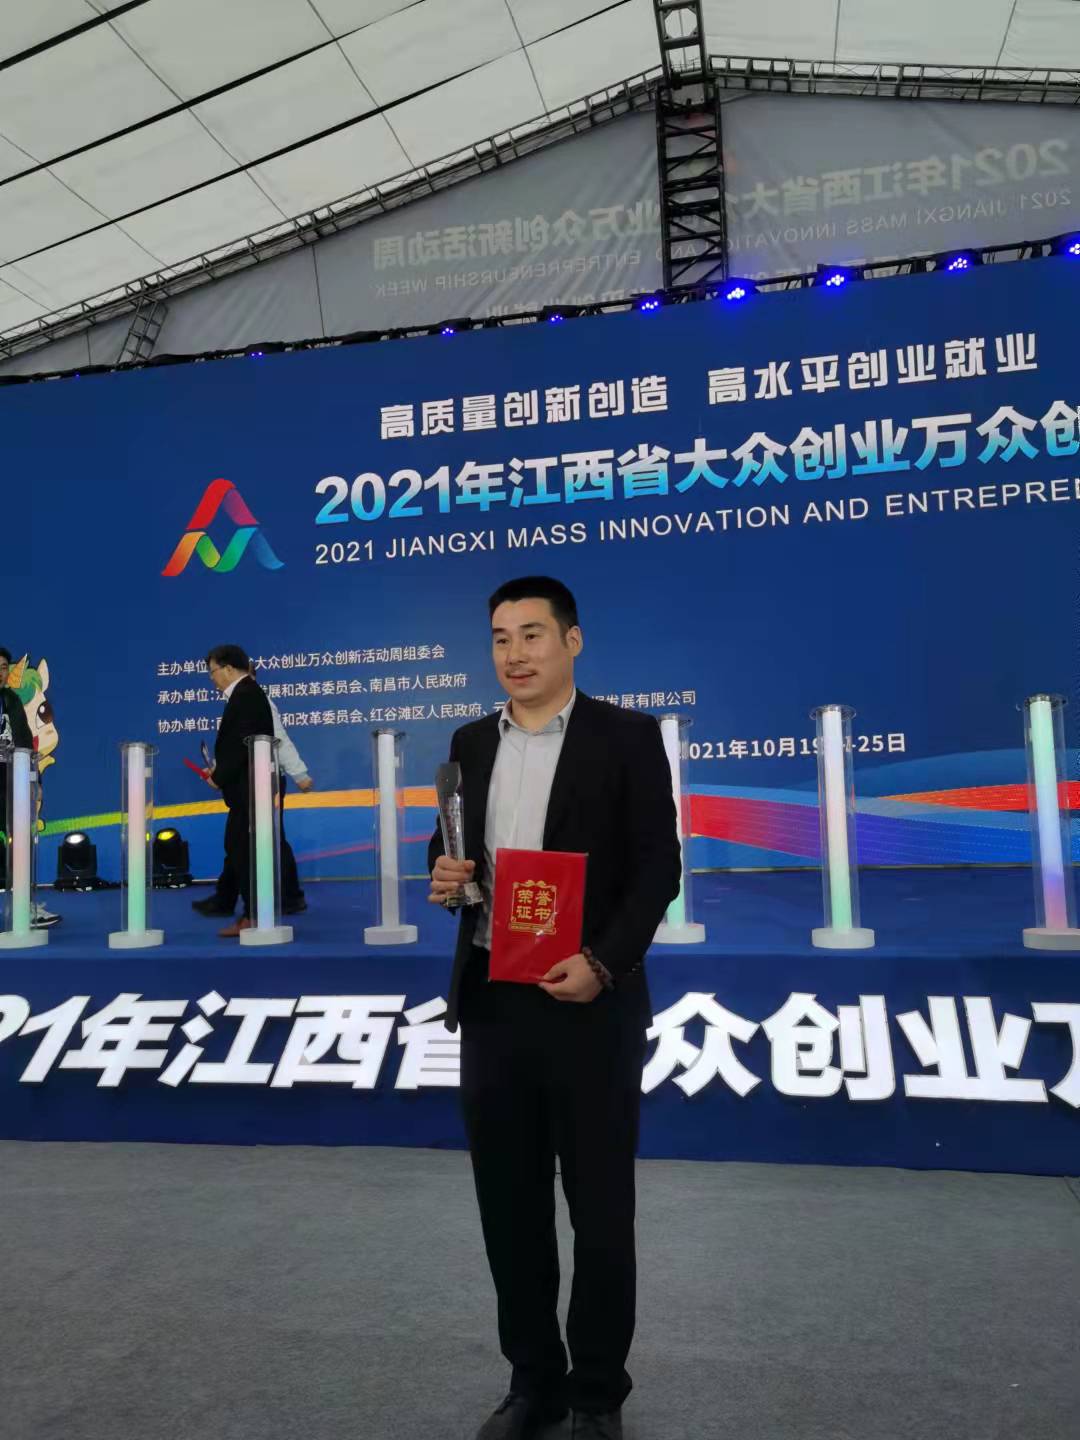 熱烈祝賀江西瀚德科技有限公司董事長周云平先生榮獲“江西省青年創業風云人物”殊榮！